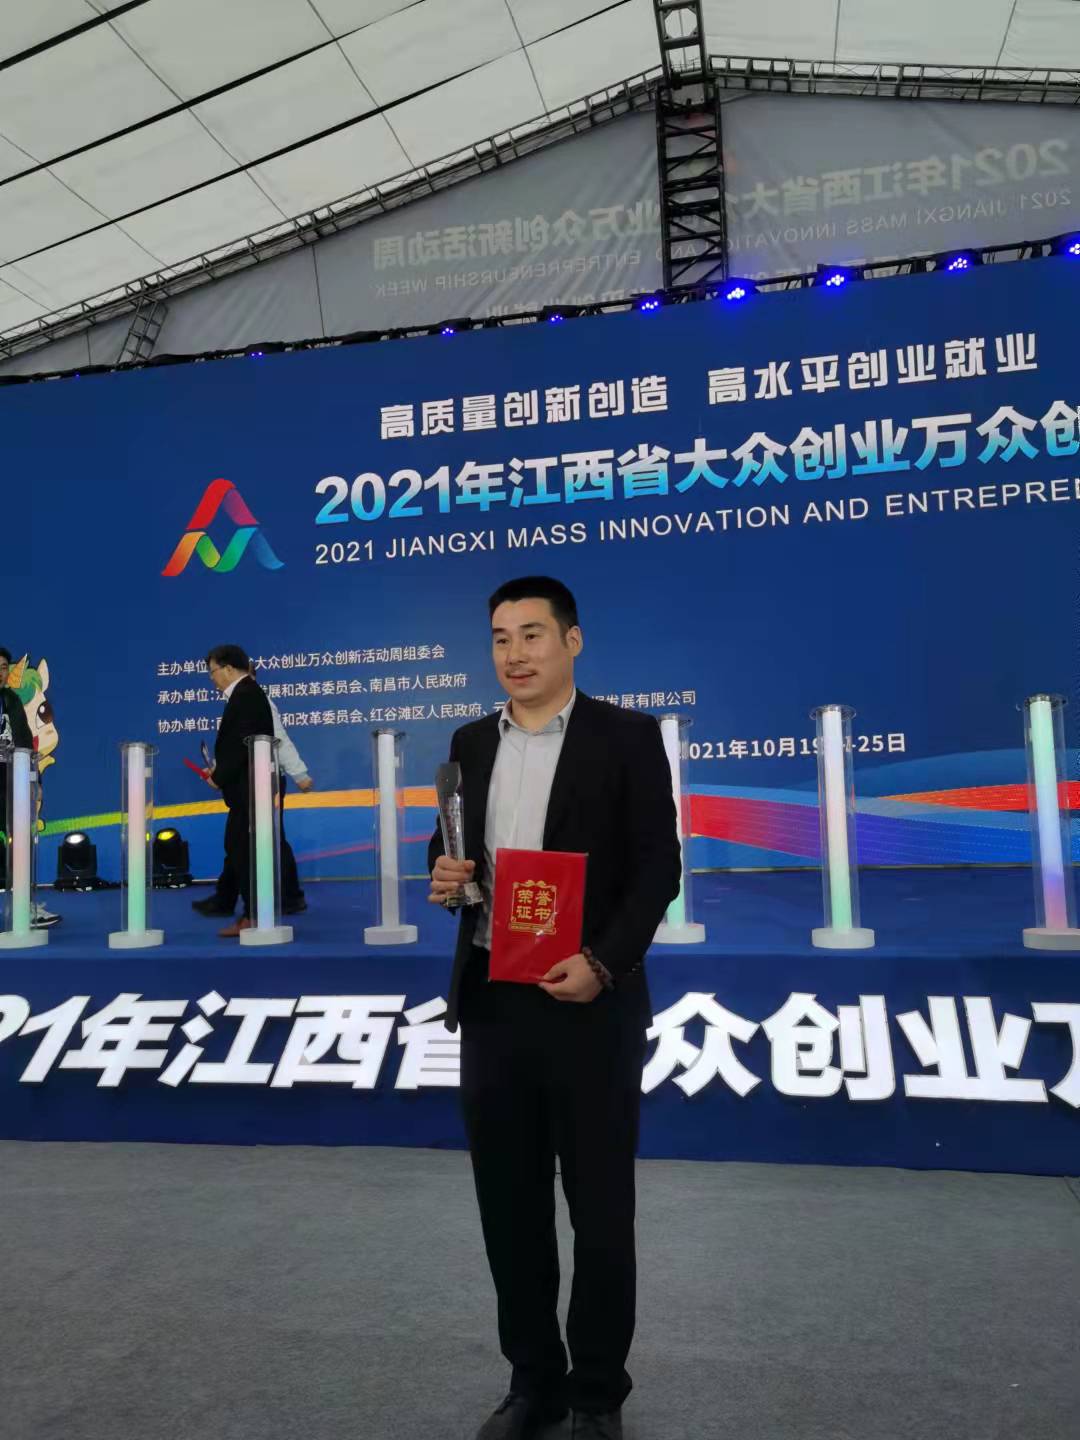 熱烈祝賀江西瀚德科技有限公司董事長周云平先生榮獲“江西省青年創業風云人物”殊榮！